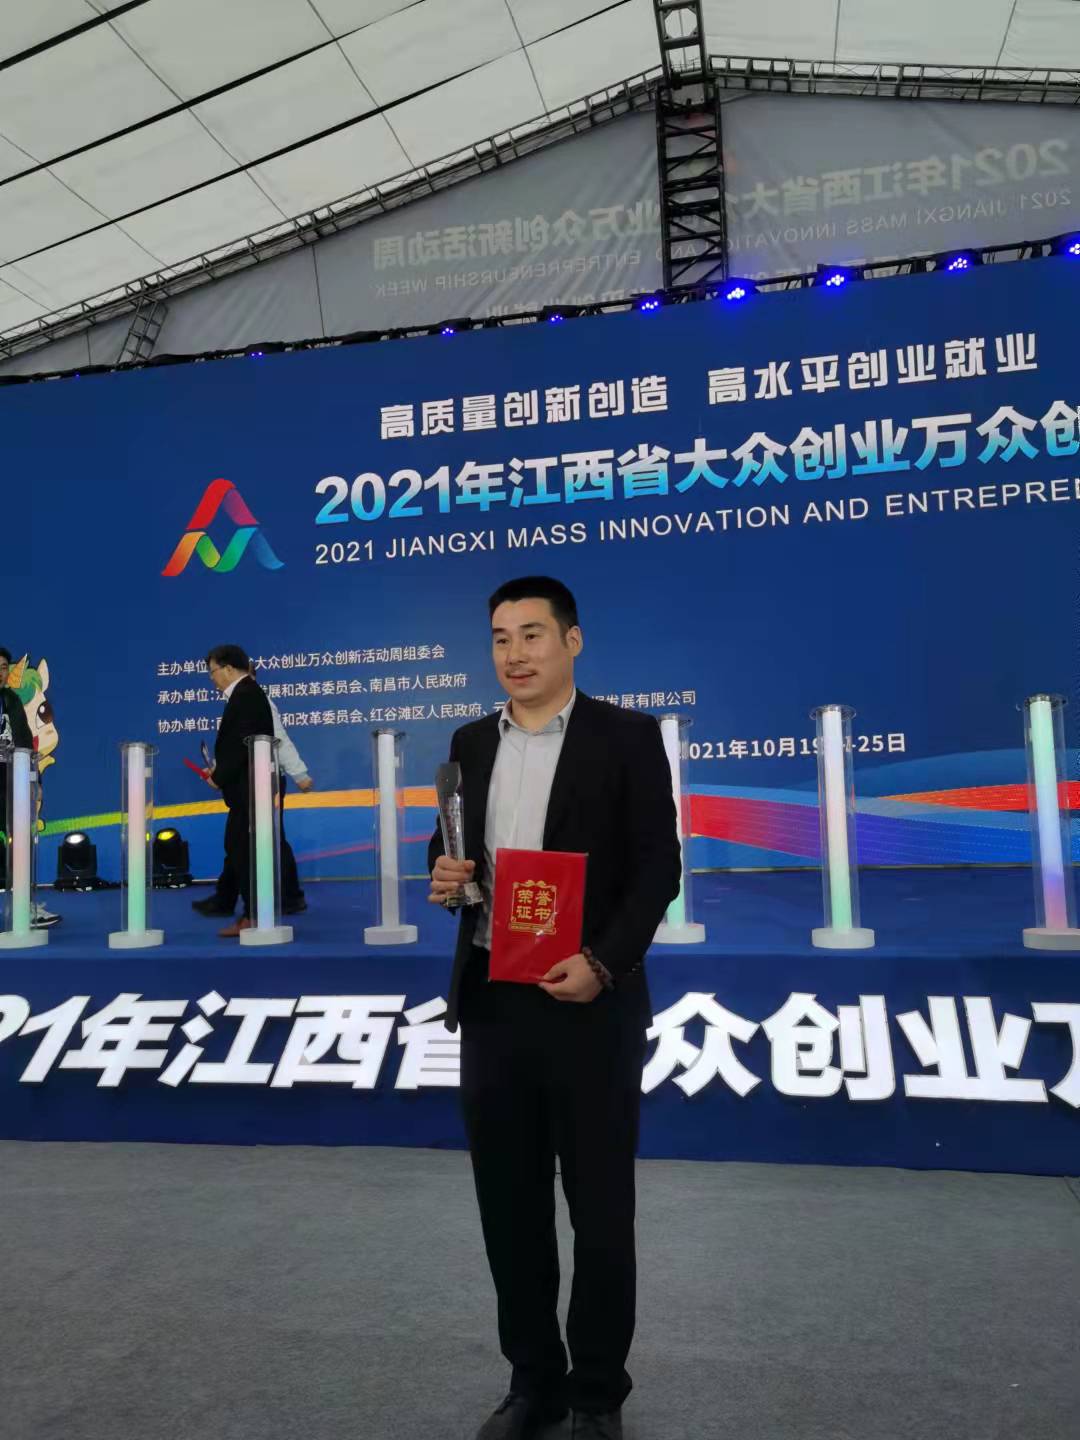 熱烈祝賀江西瀚德科技有限公司董事長周云平先生榮獲“江西省青年創業風云人物”殊榮！